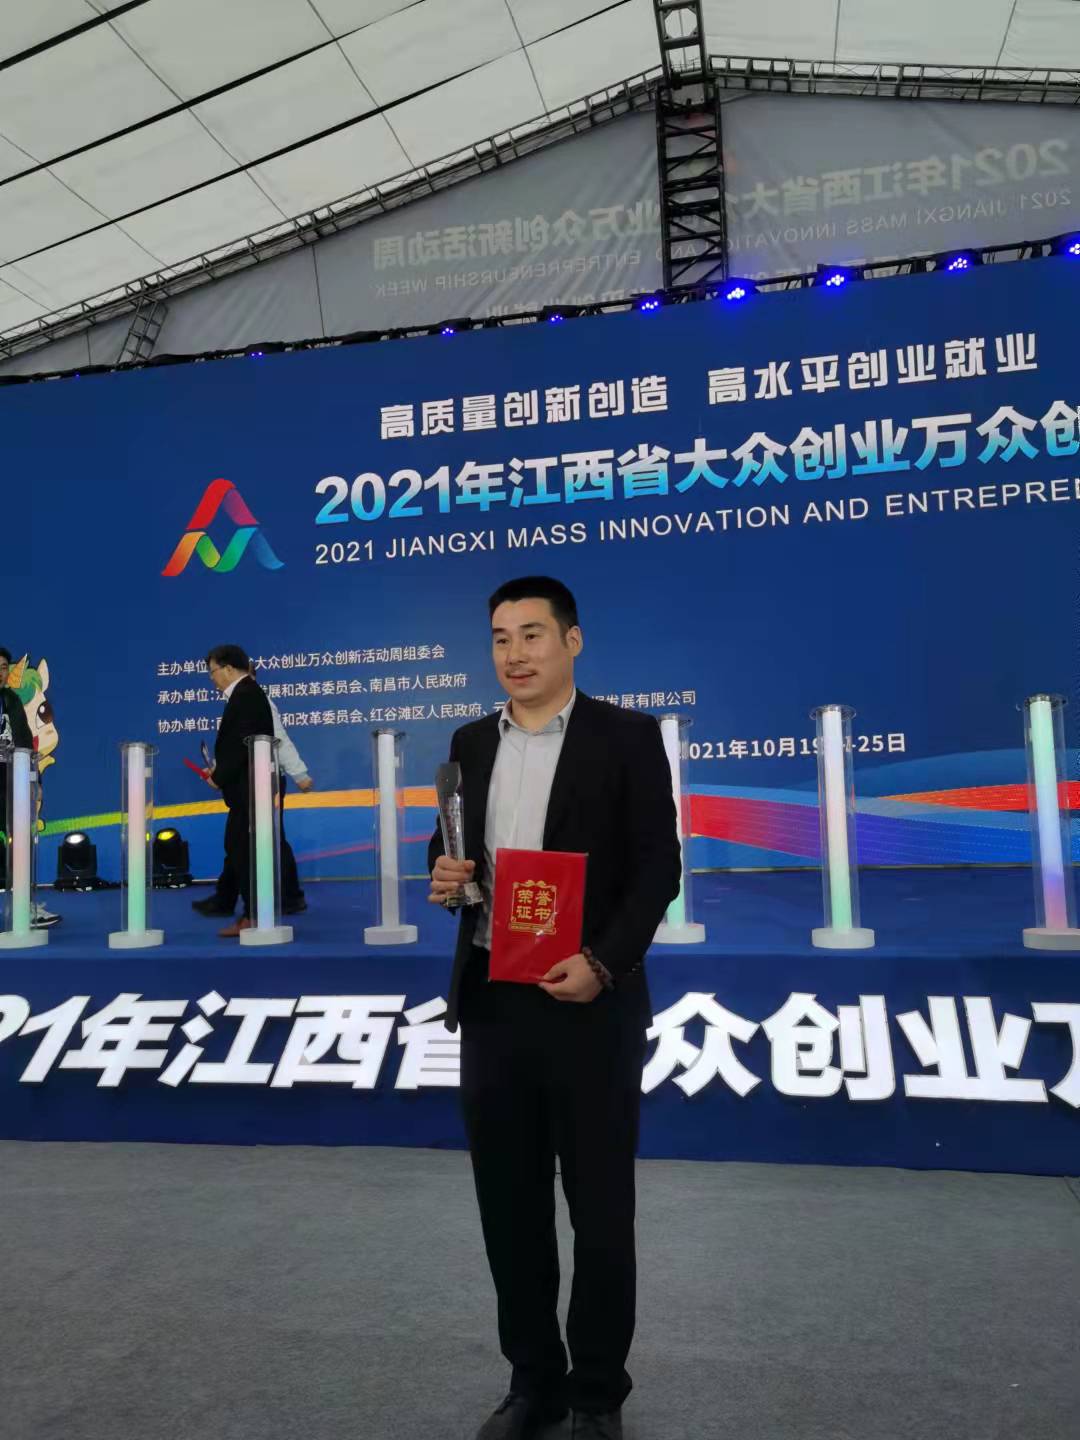 熱烈祝賀江西瀚德科技有限公司董事長周云平先生榮獲“江西省青年創業風云人物”殊榮！